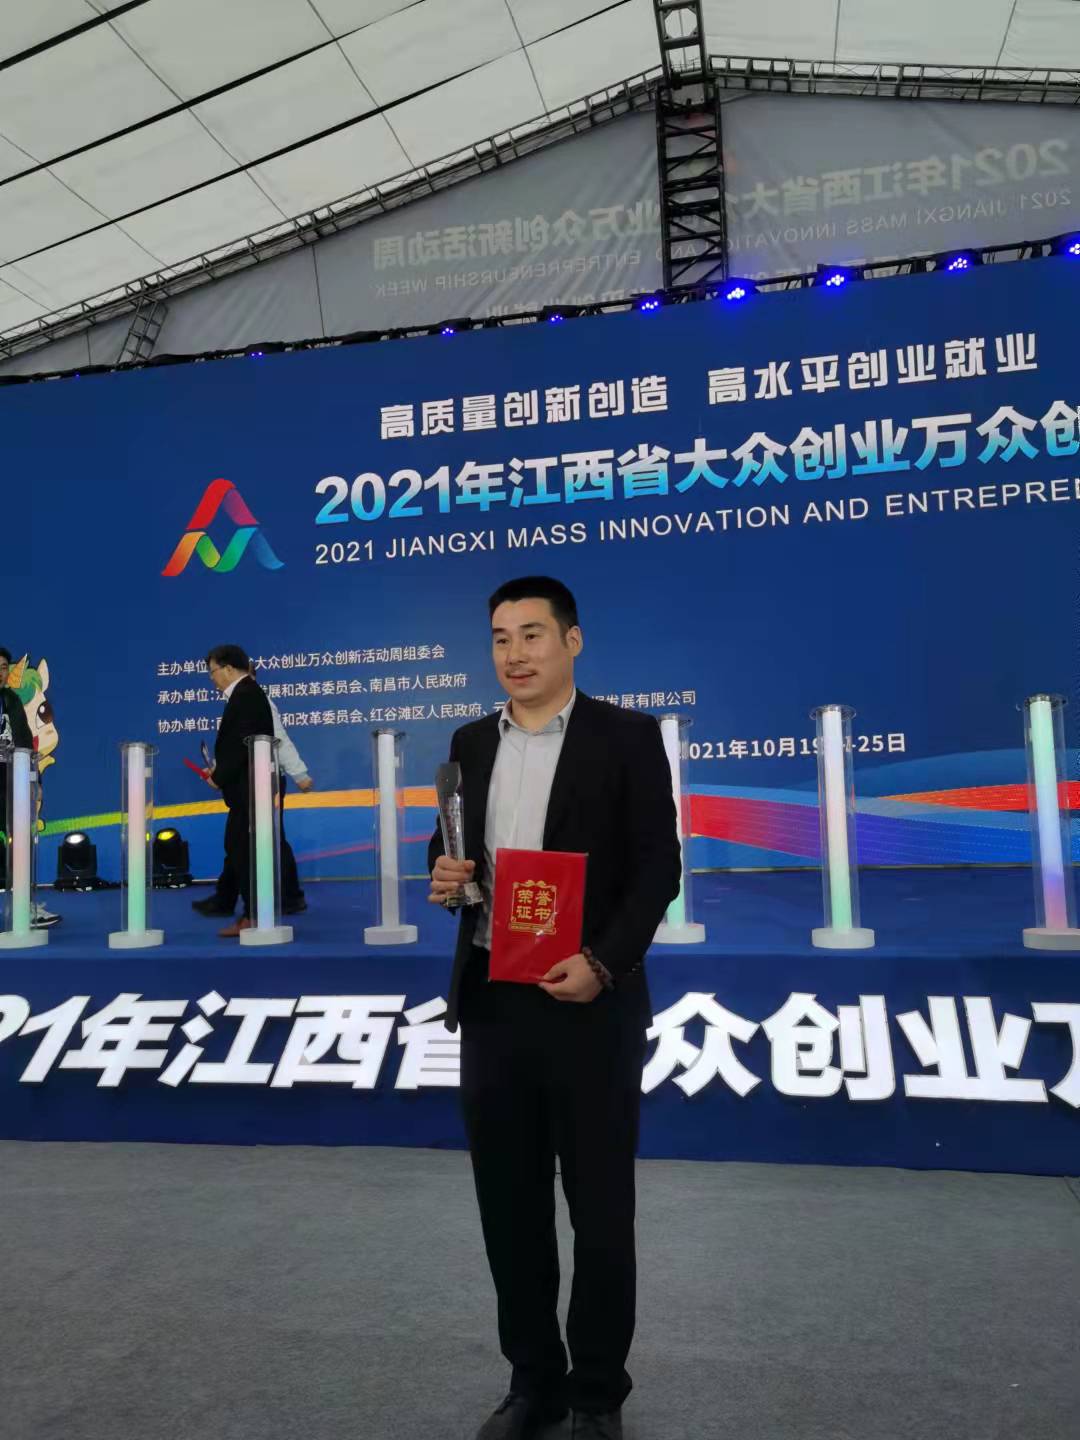 熱烈祝賀江西瀚德科技有限公司董事長周云平先生榮獲“江西省青年創業風云人物”殊榮！